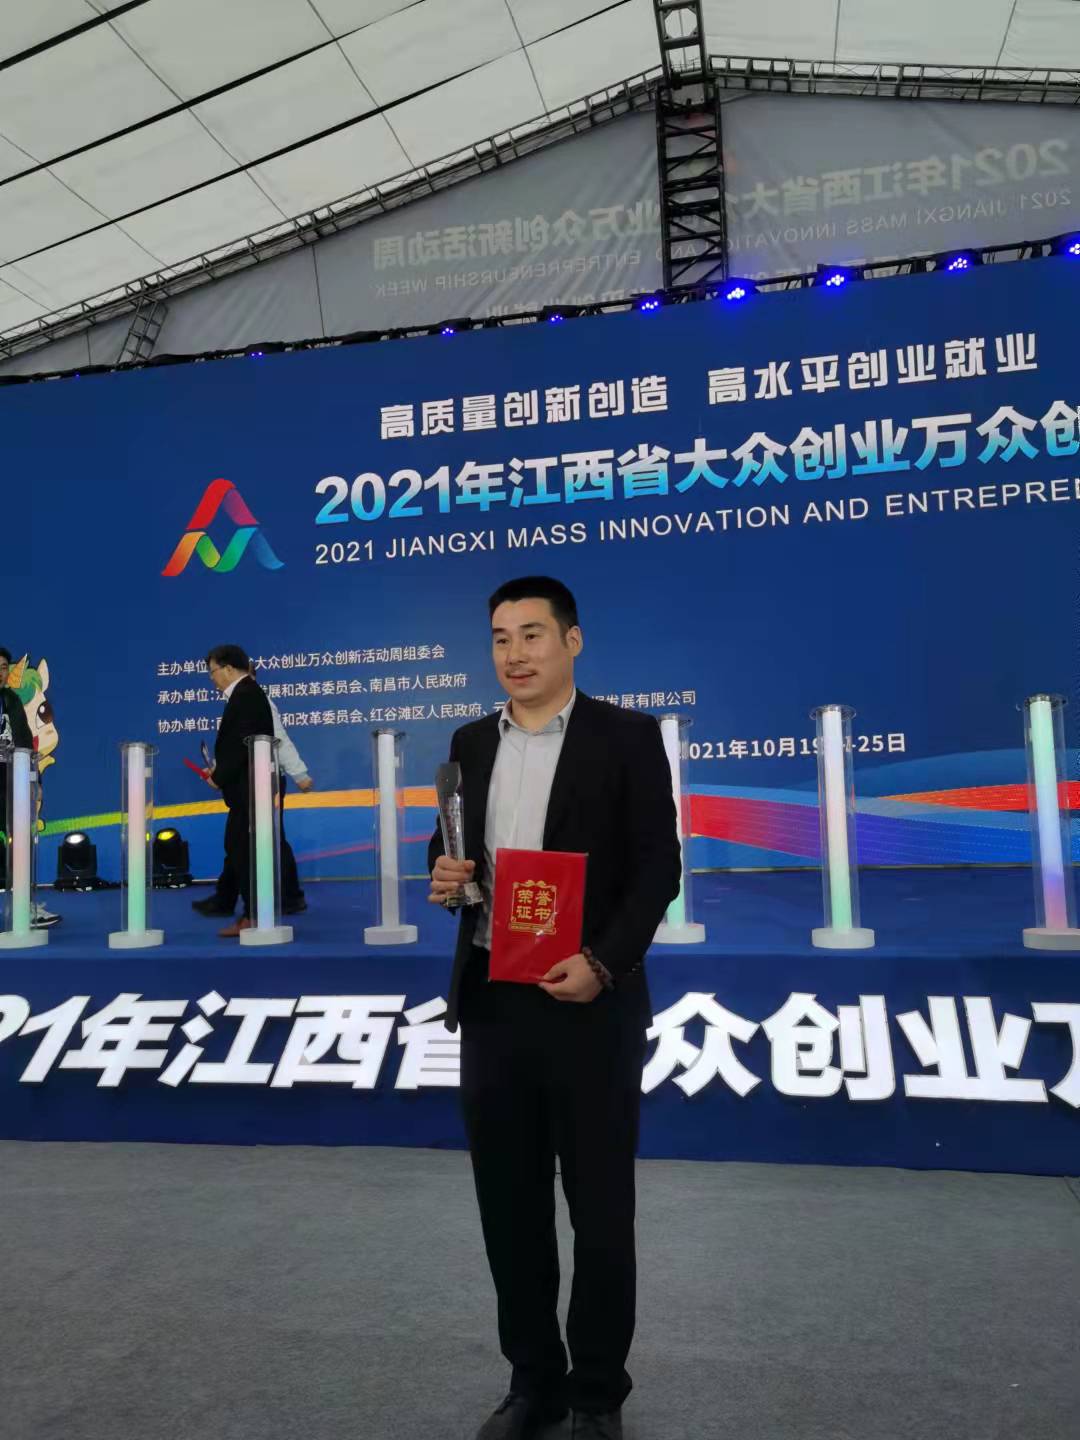 熱烈祝賀江西瀚德科技有限公司董事長周云平先生榮獲“江西省青年創業風云人物”殊榮！